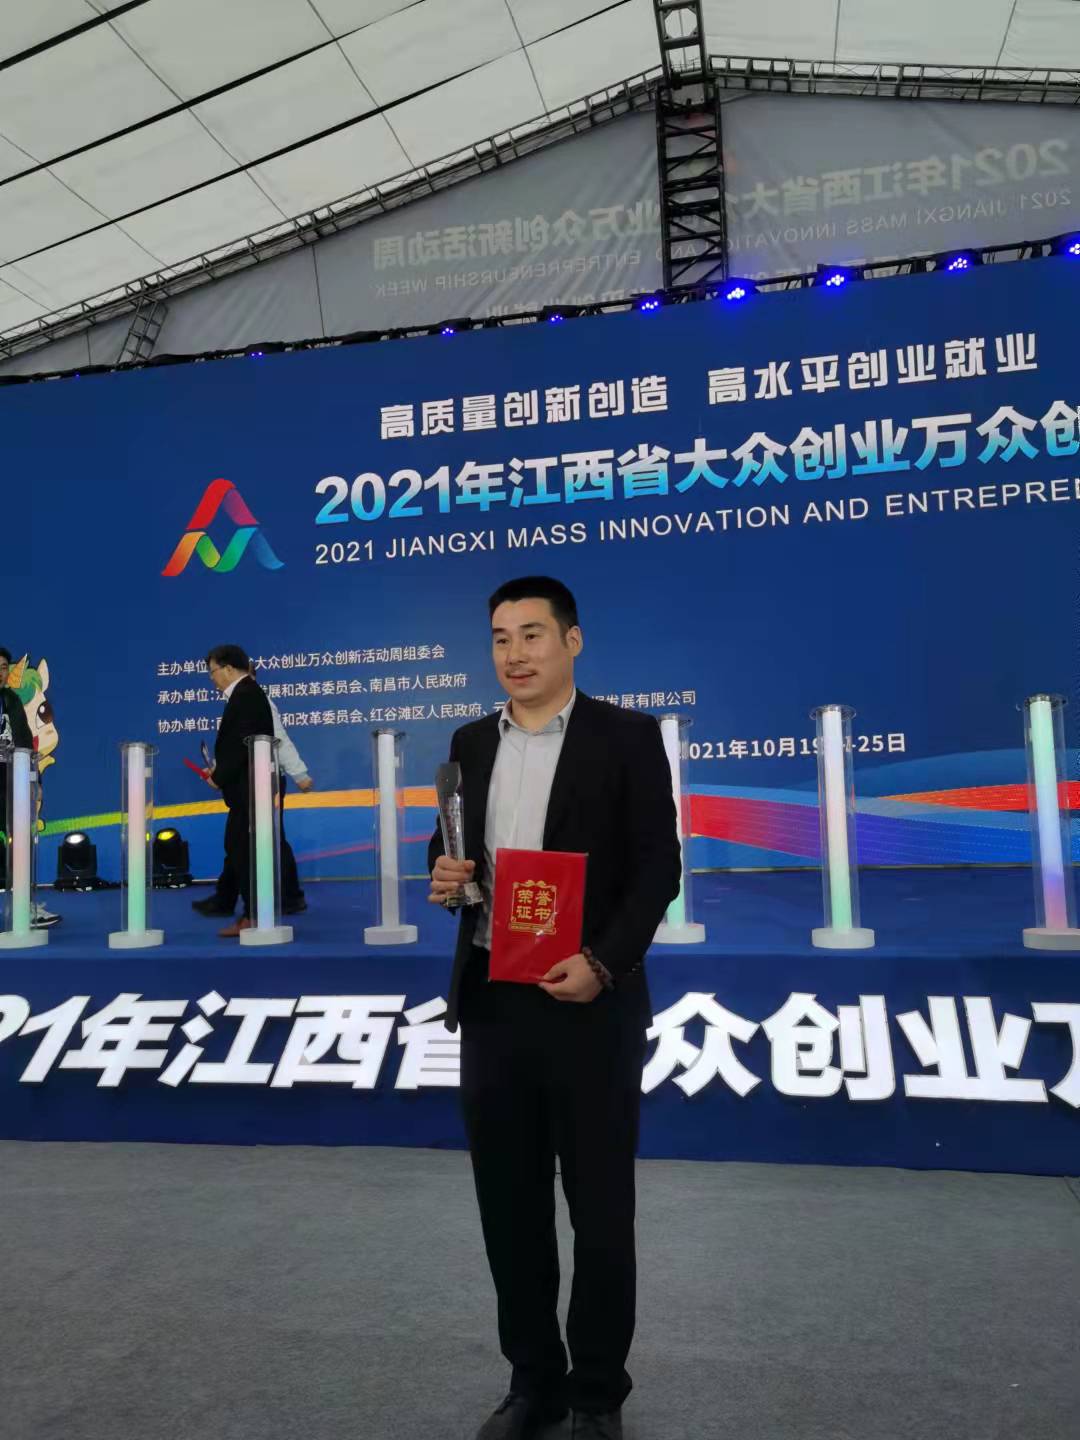 熱烈祝賀江西瀚德科技有限公司董事長周云平先生榮獲“江西省青年創業風云人物”殊榮！